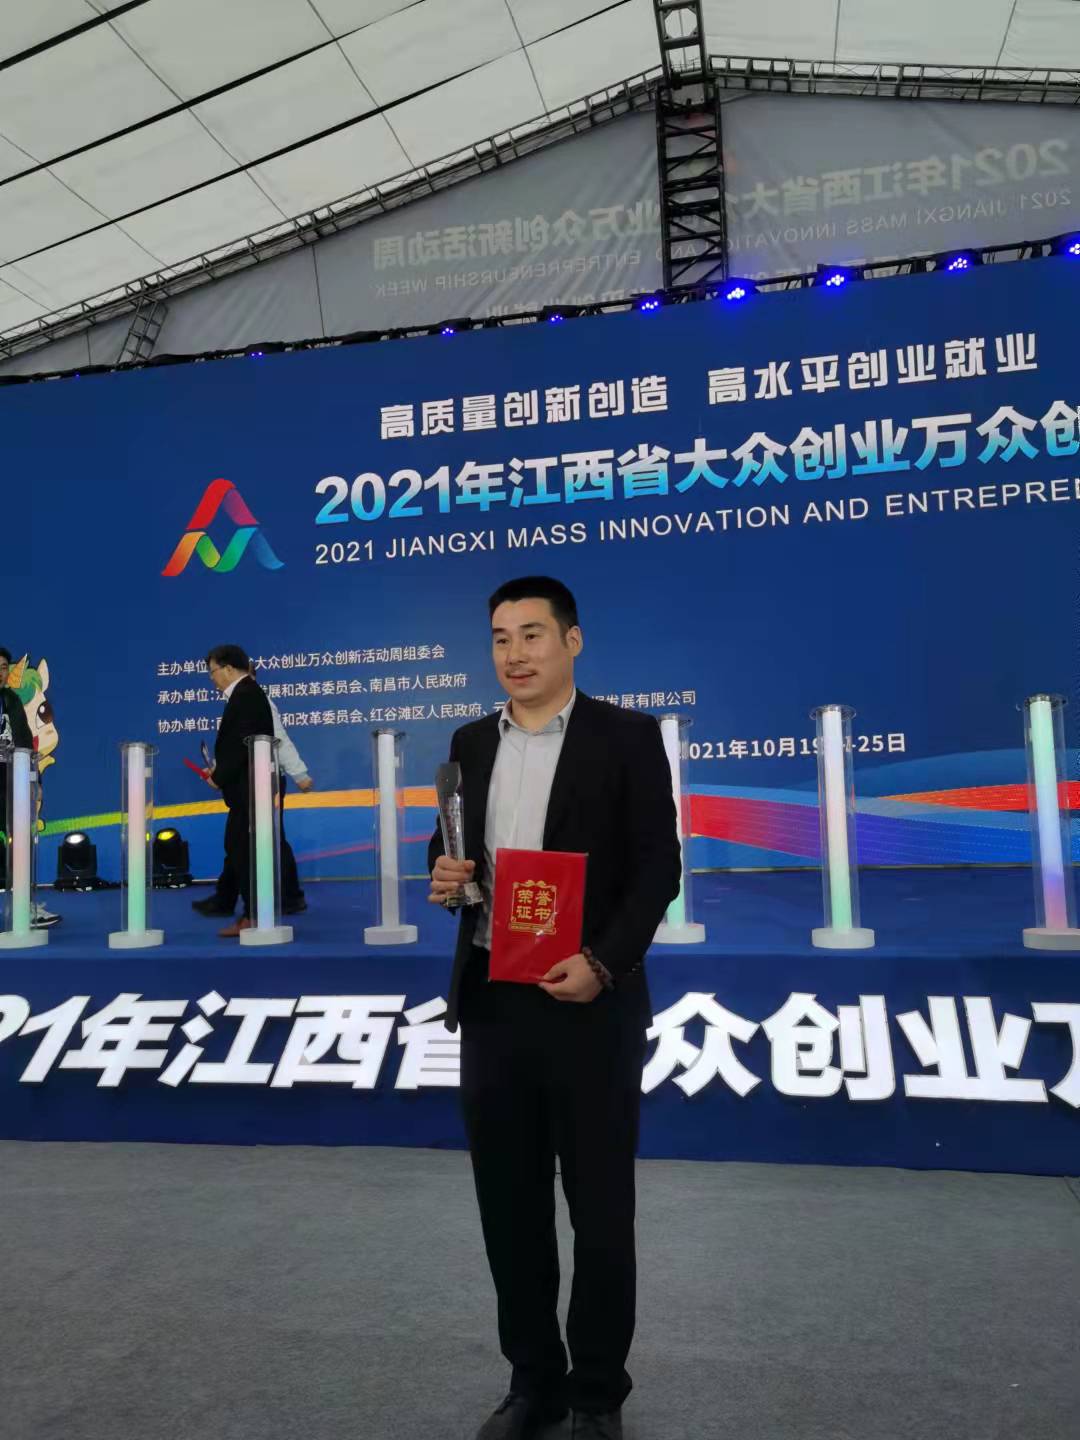 熱烈祝賀江西瀚德科技有限公司董事長周云平先生榮獲“江西省青年創業風云人物”殊榮！